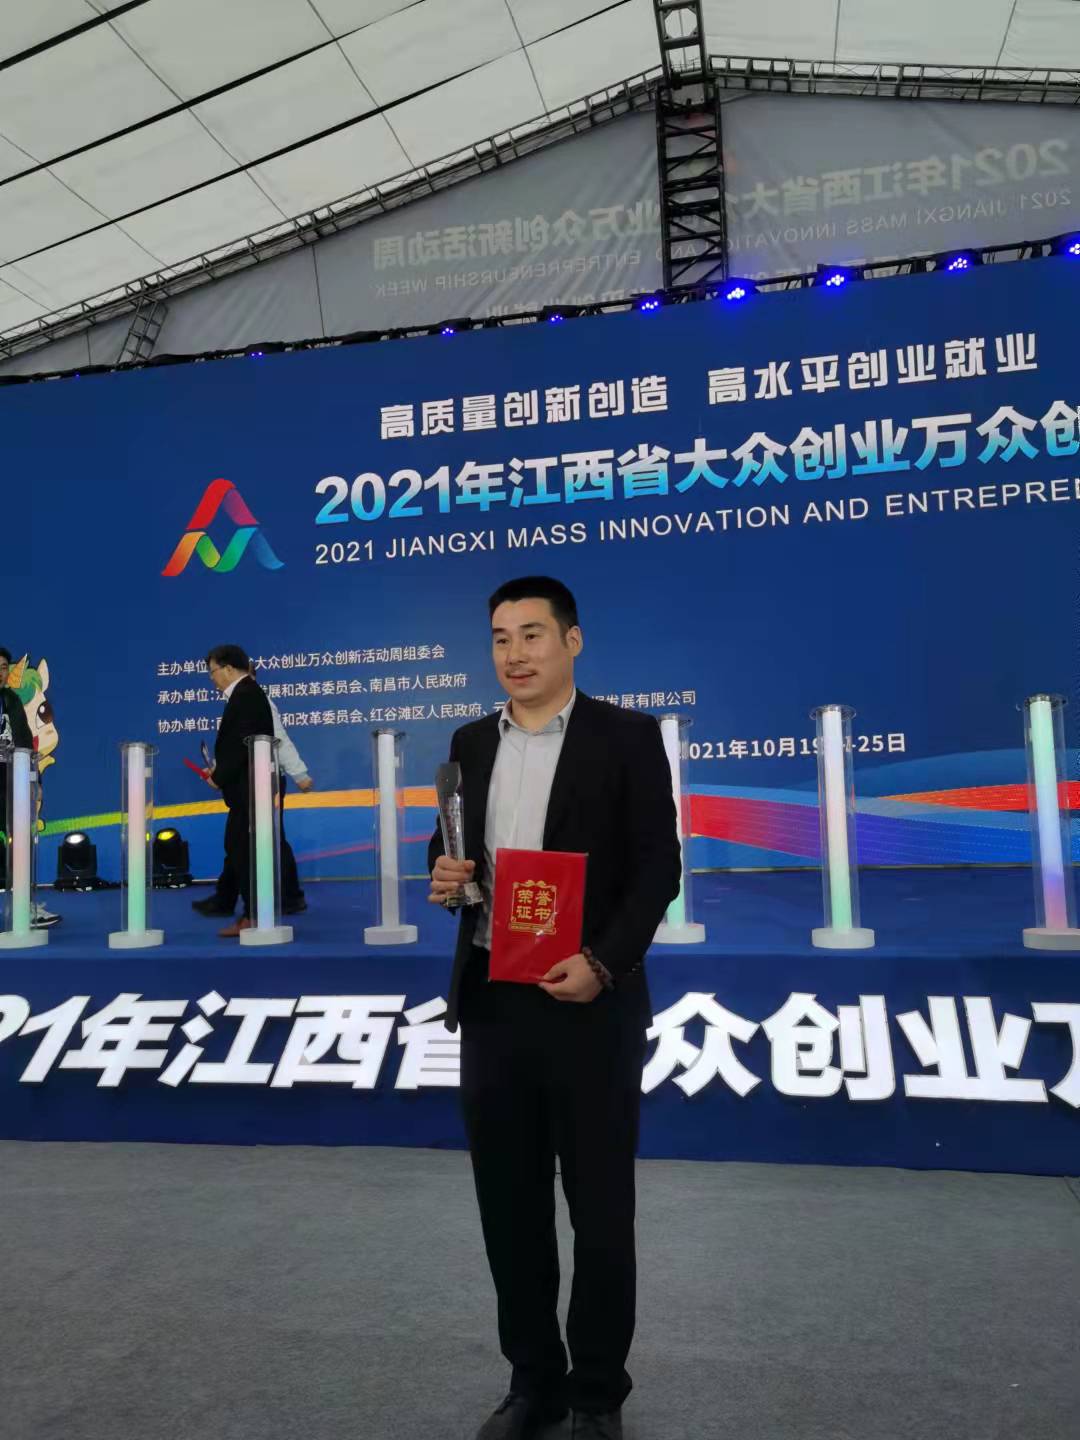 熱烈祝賀江西瀚德科技有限公司董事長周云平先生榮獲“江西省青年創業風云人物”殊榮！